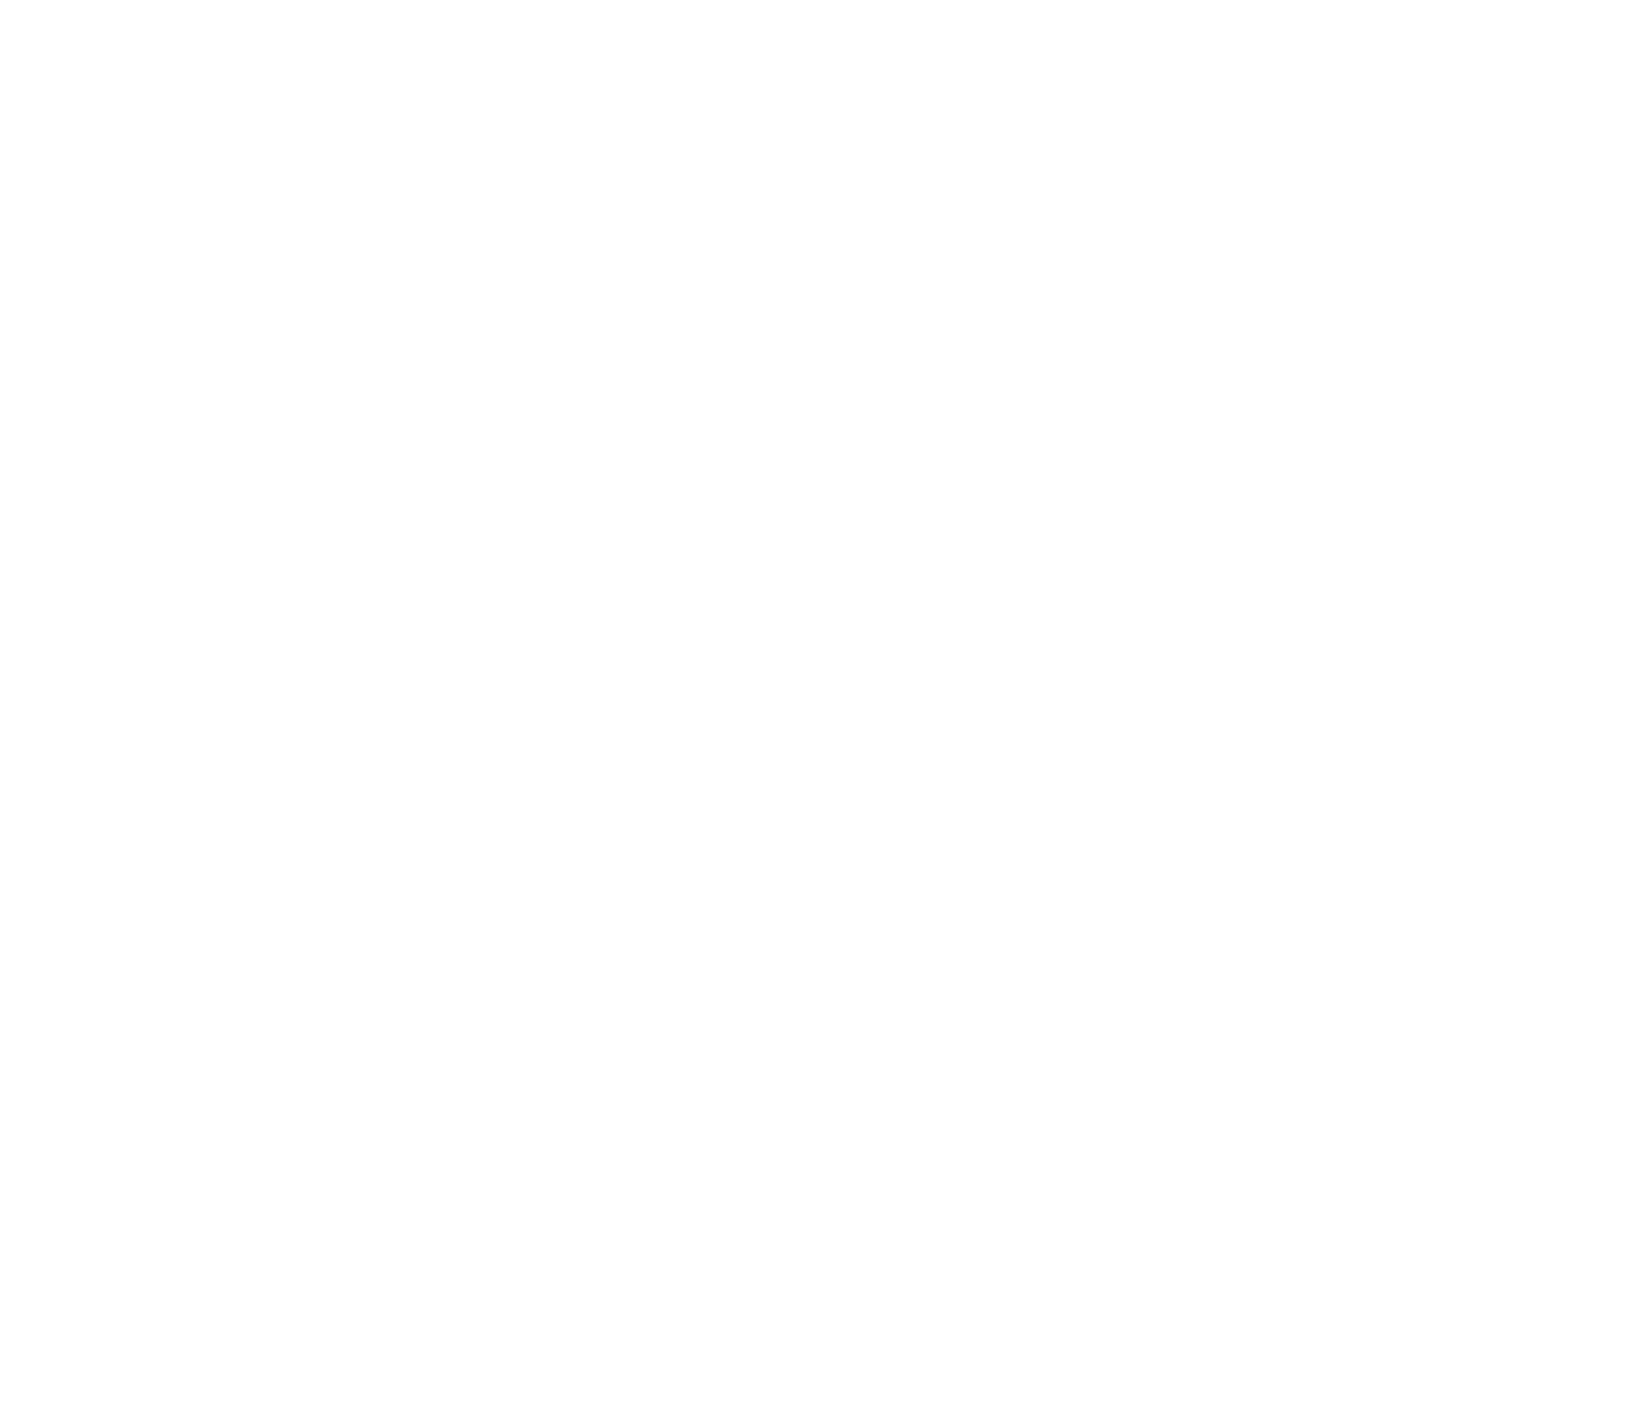 Upland Mutual